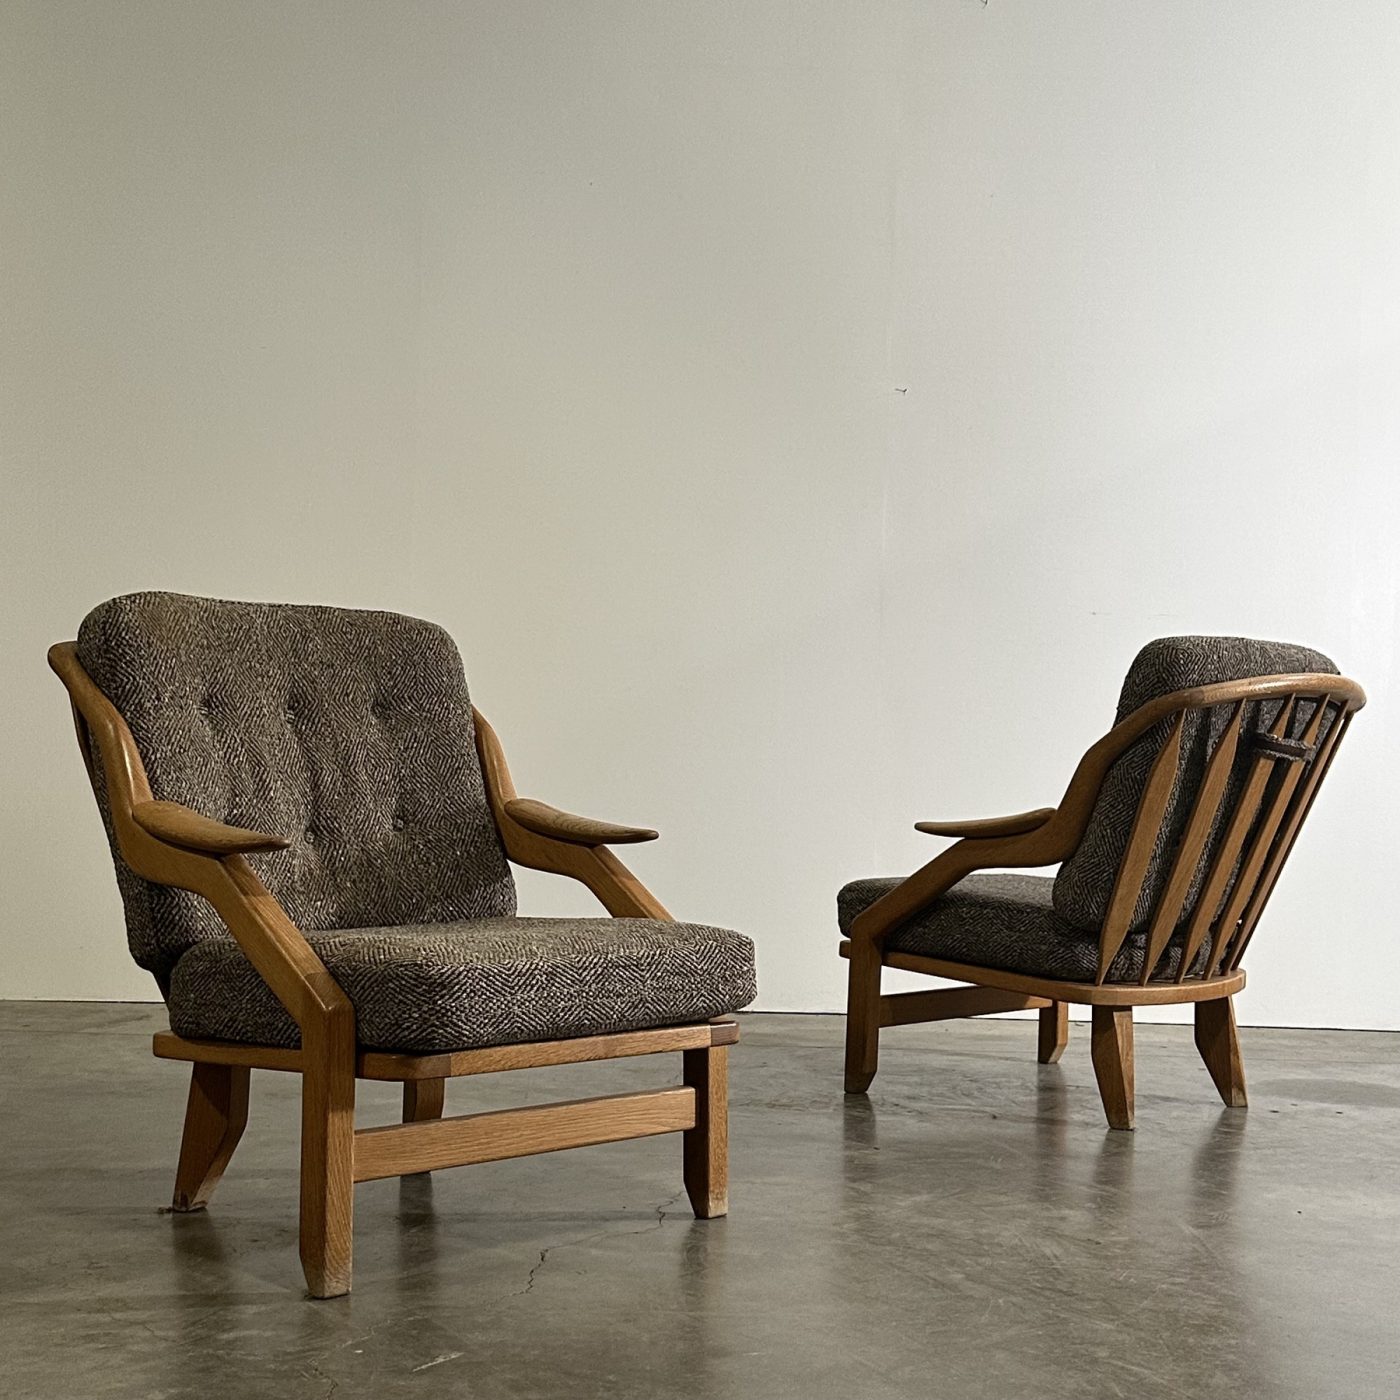 objet-vagabond-guillerme-armchairs0001